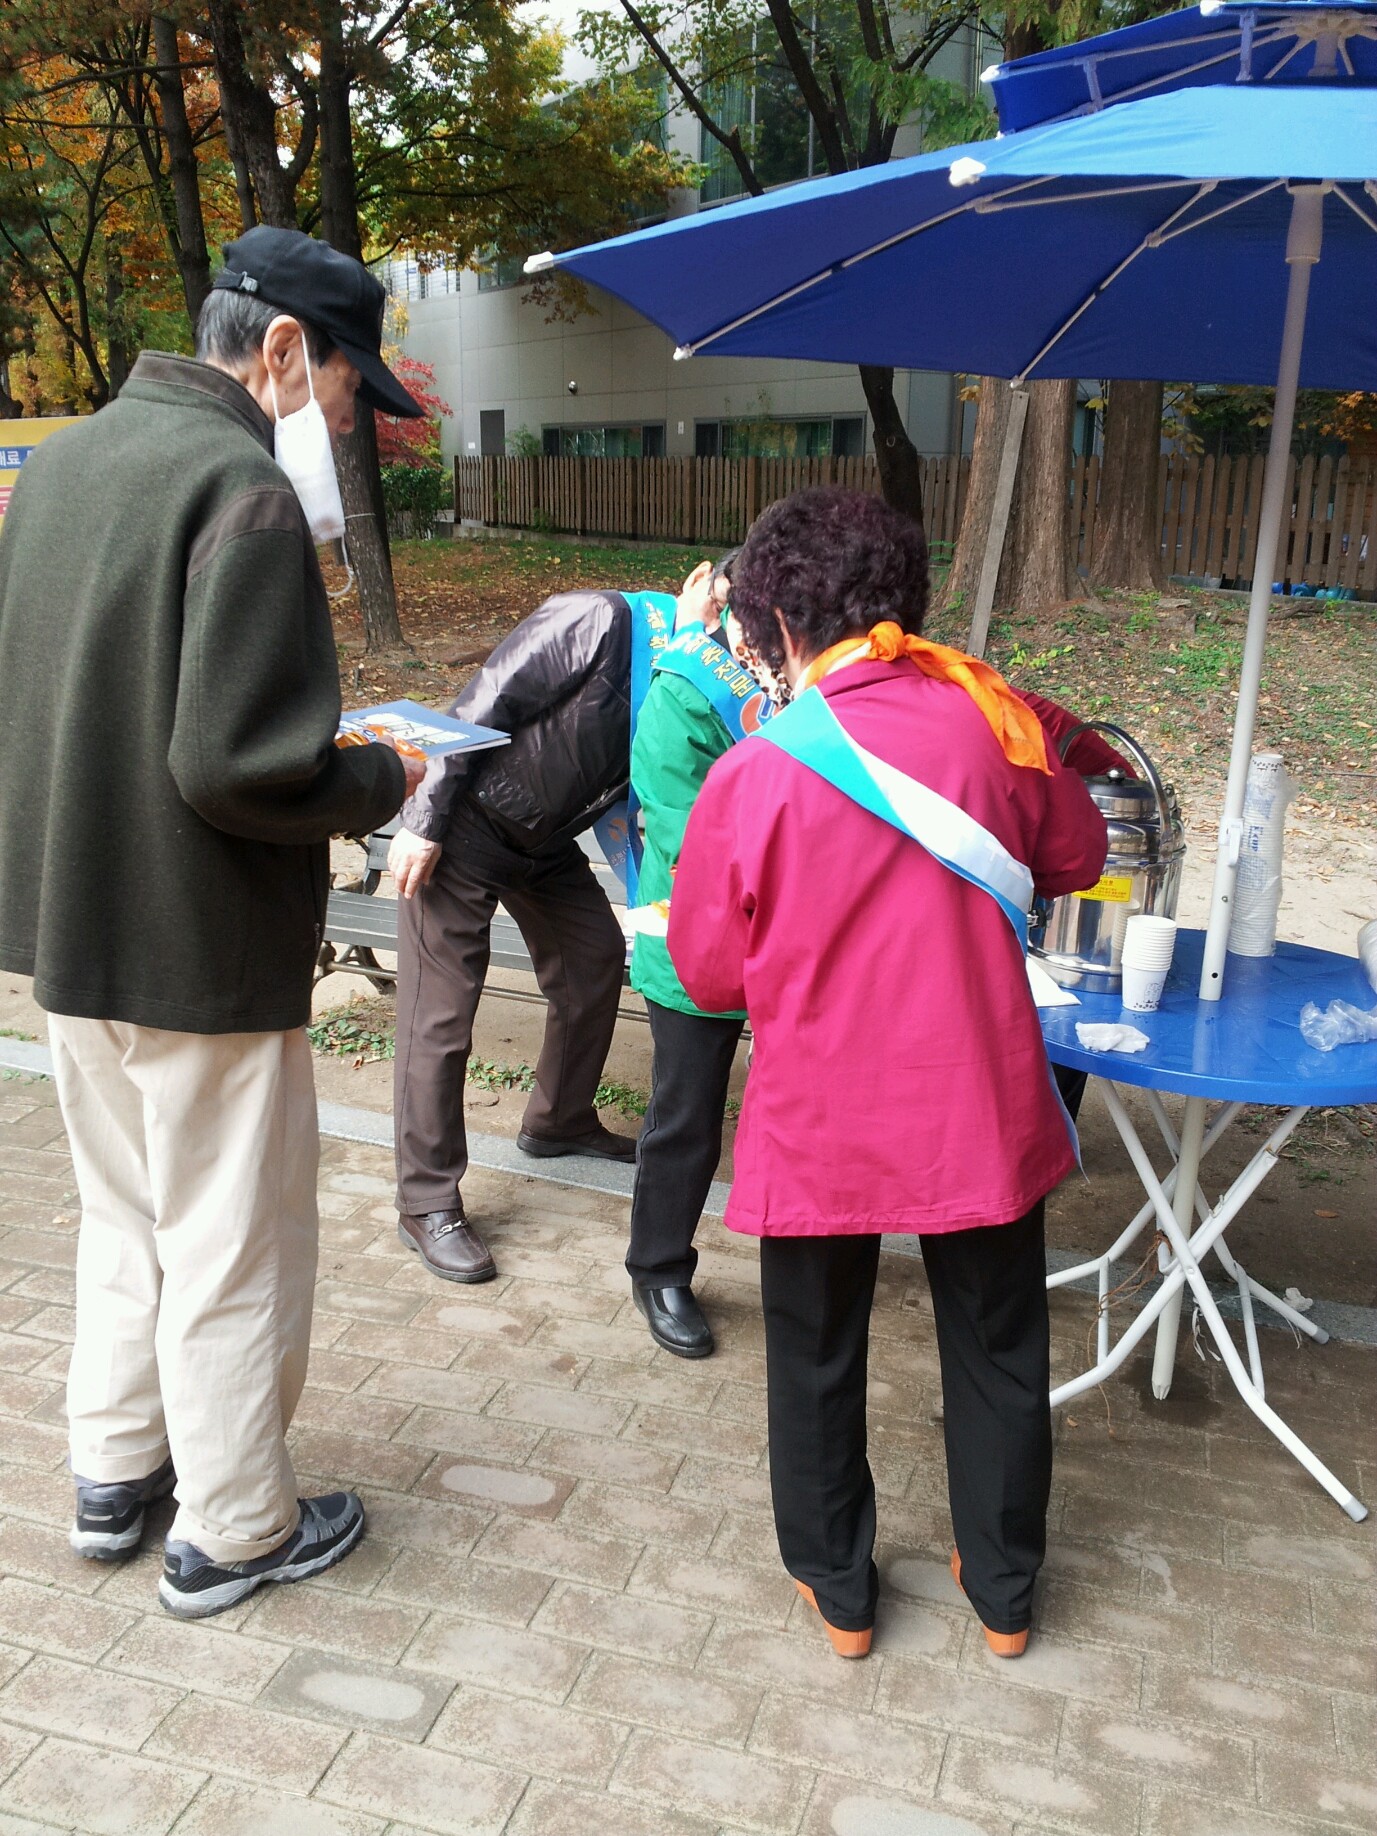 2013년 11월 9일 - `사랑회` 중계근린공원 봉사활동 게시글의 1번째 첨부파일입니다.